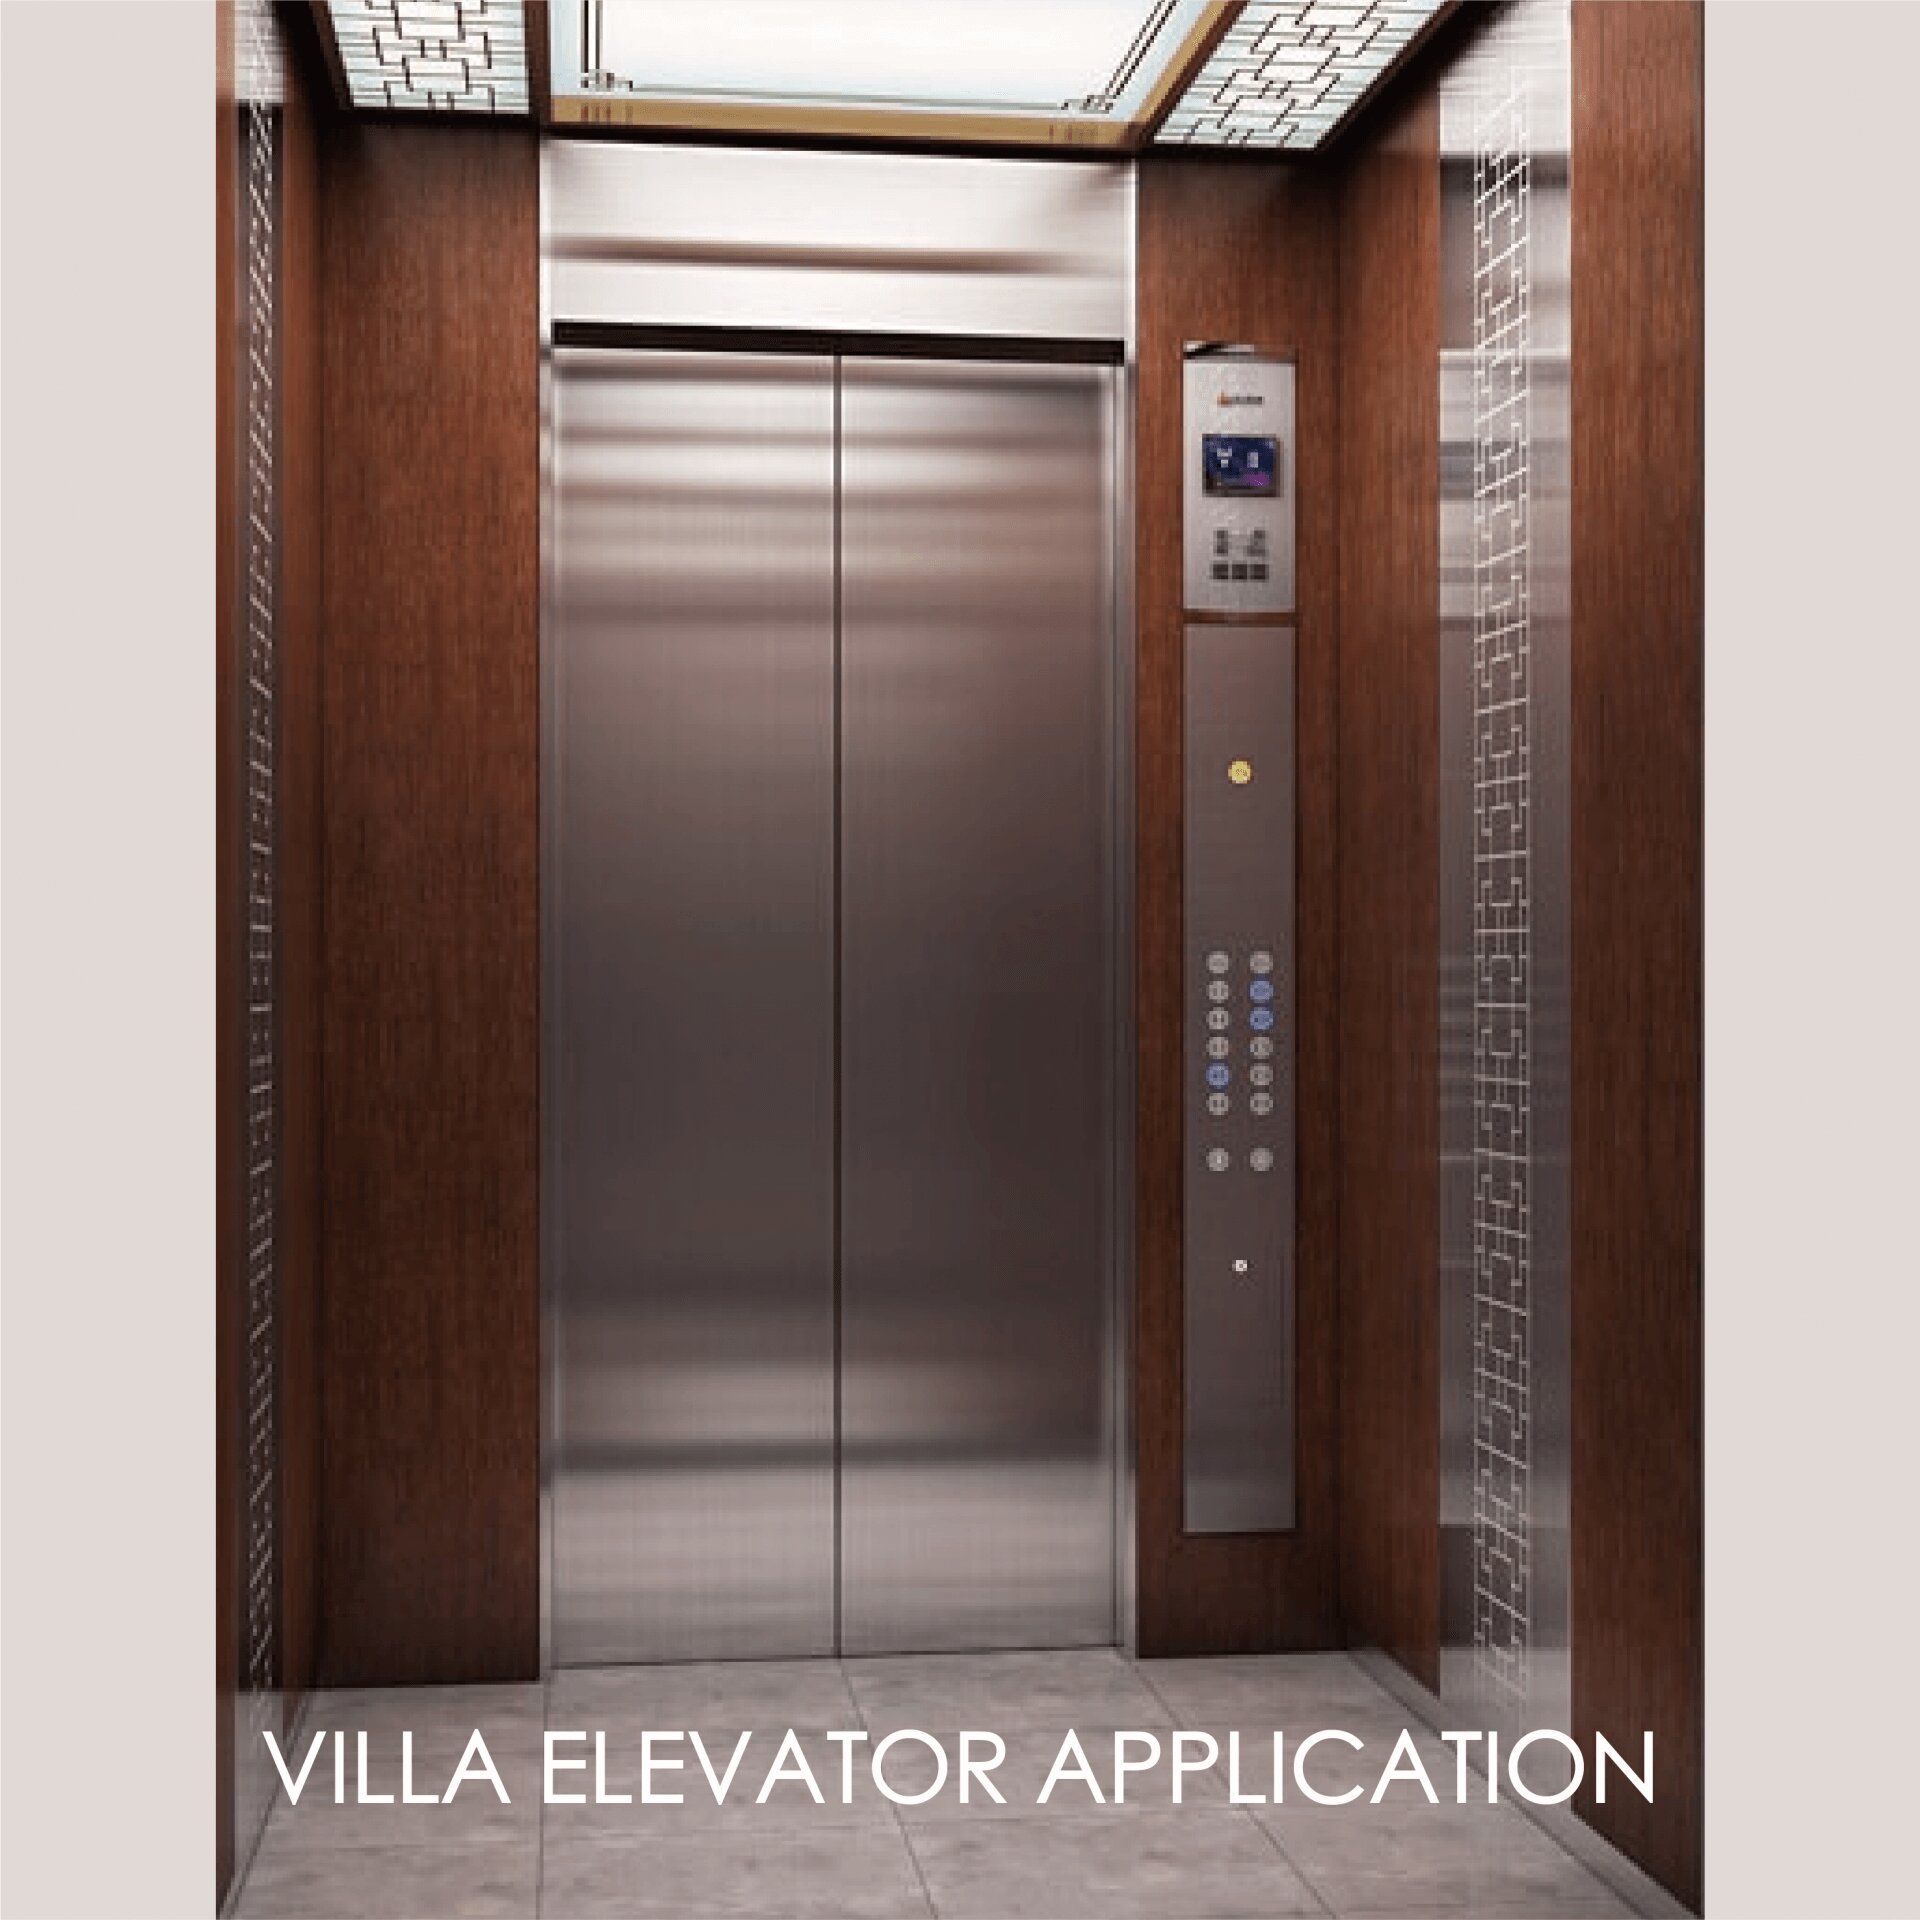 Использование ламинированного металла для украшения панели двери и внутреннего пространства лифта может создать эстетику и прочность.